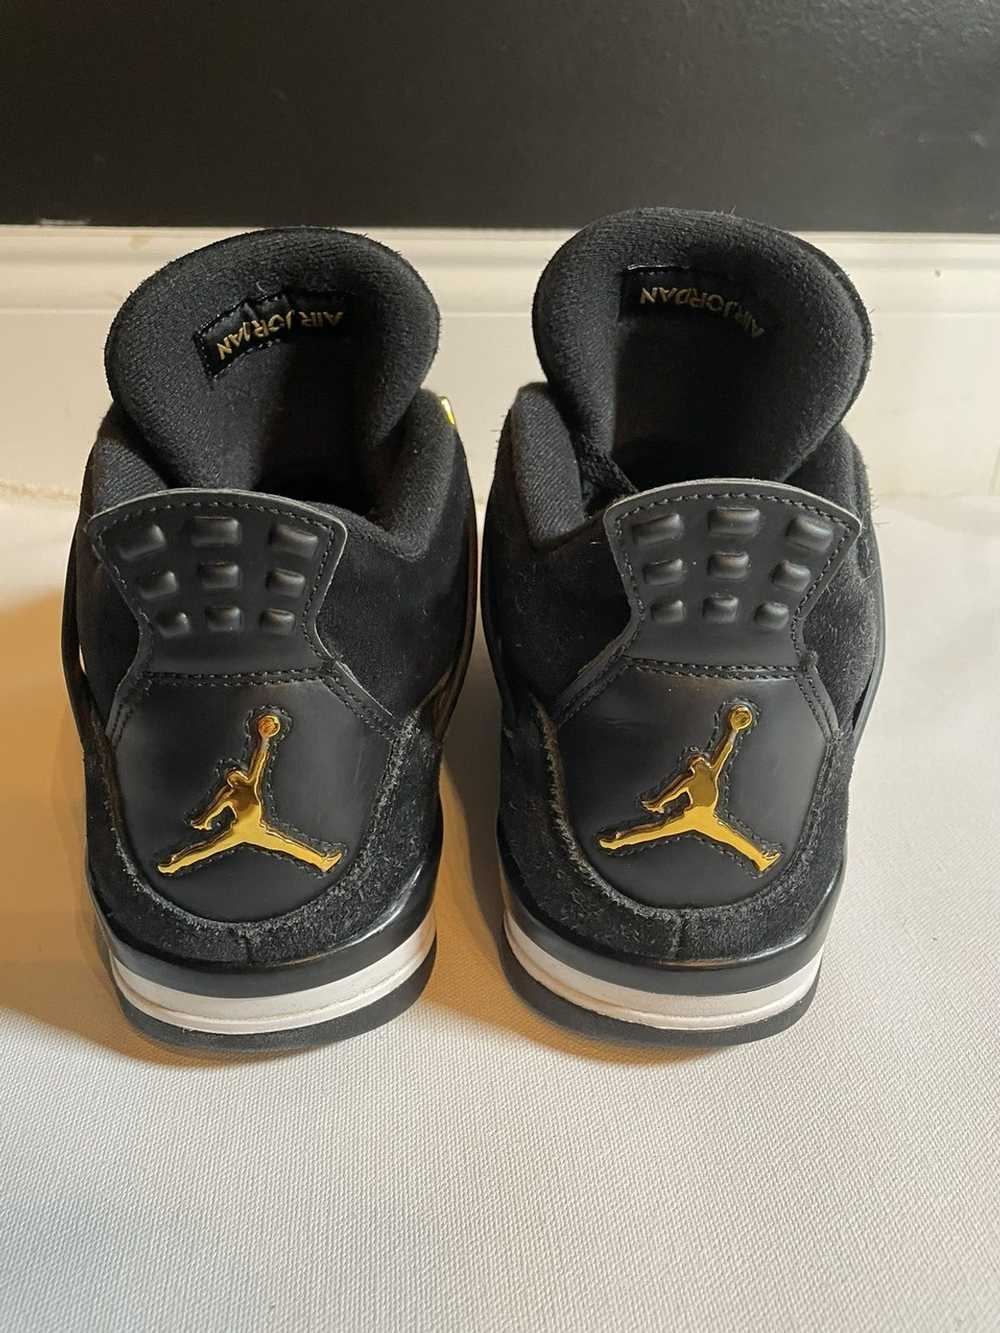 Jordan Brand × Nike Jordan 4 retro royalty - image 4